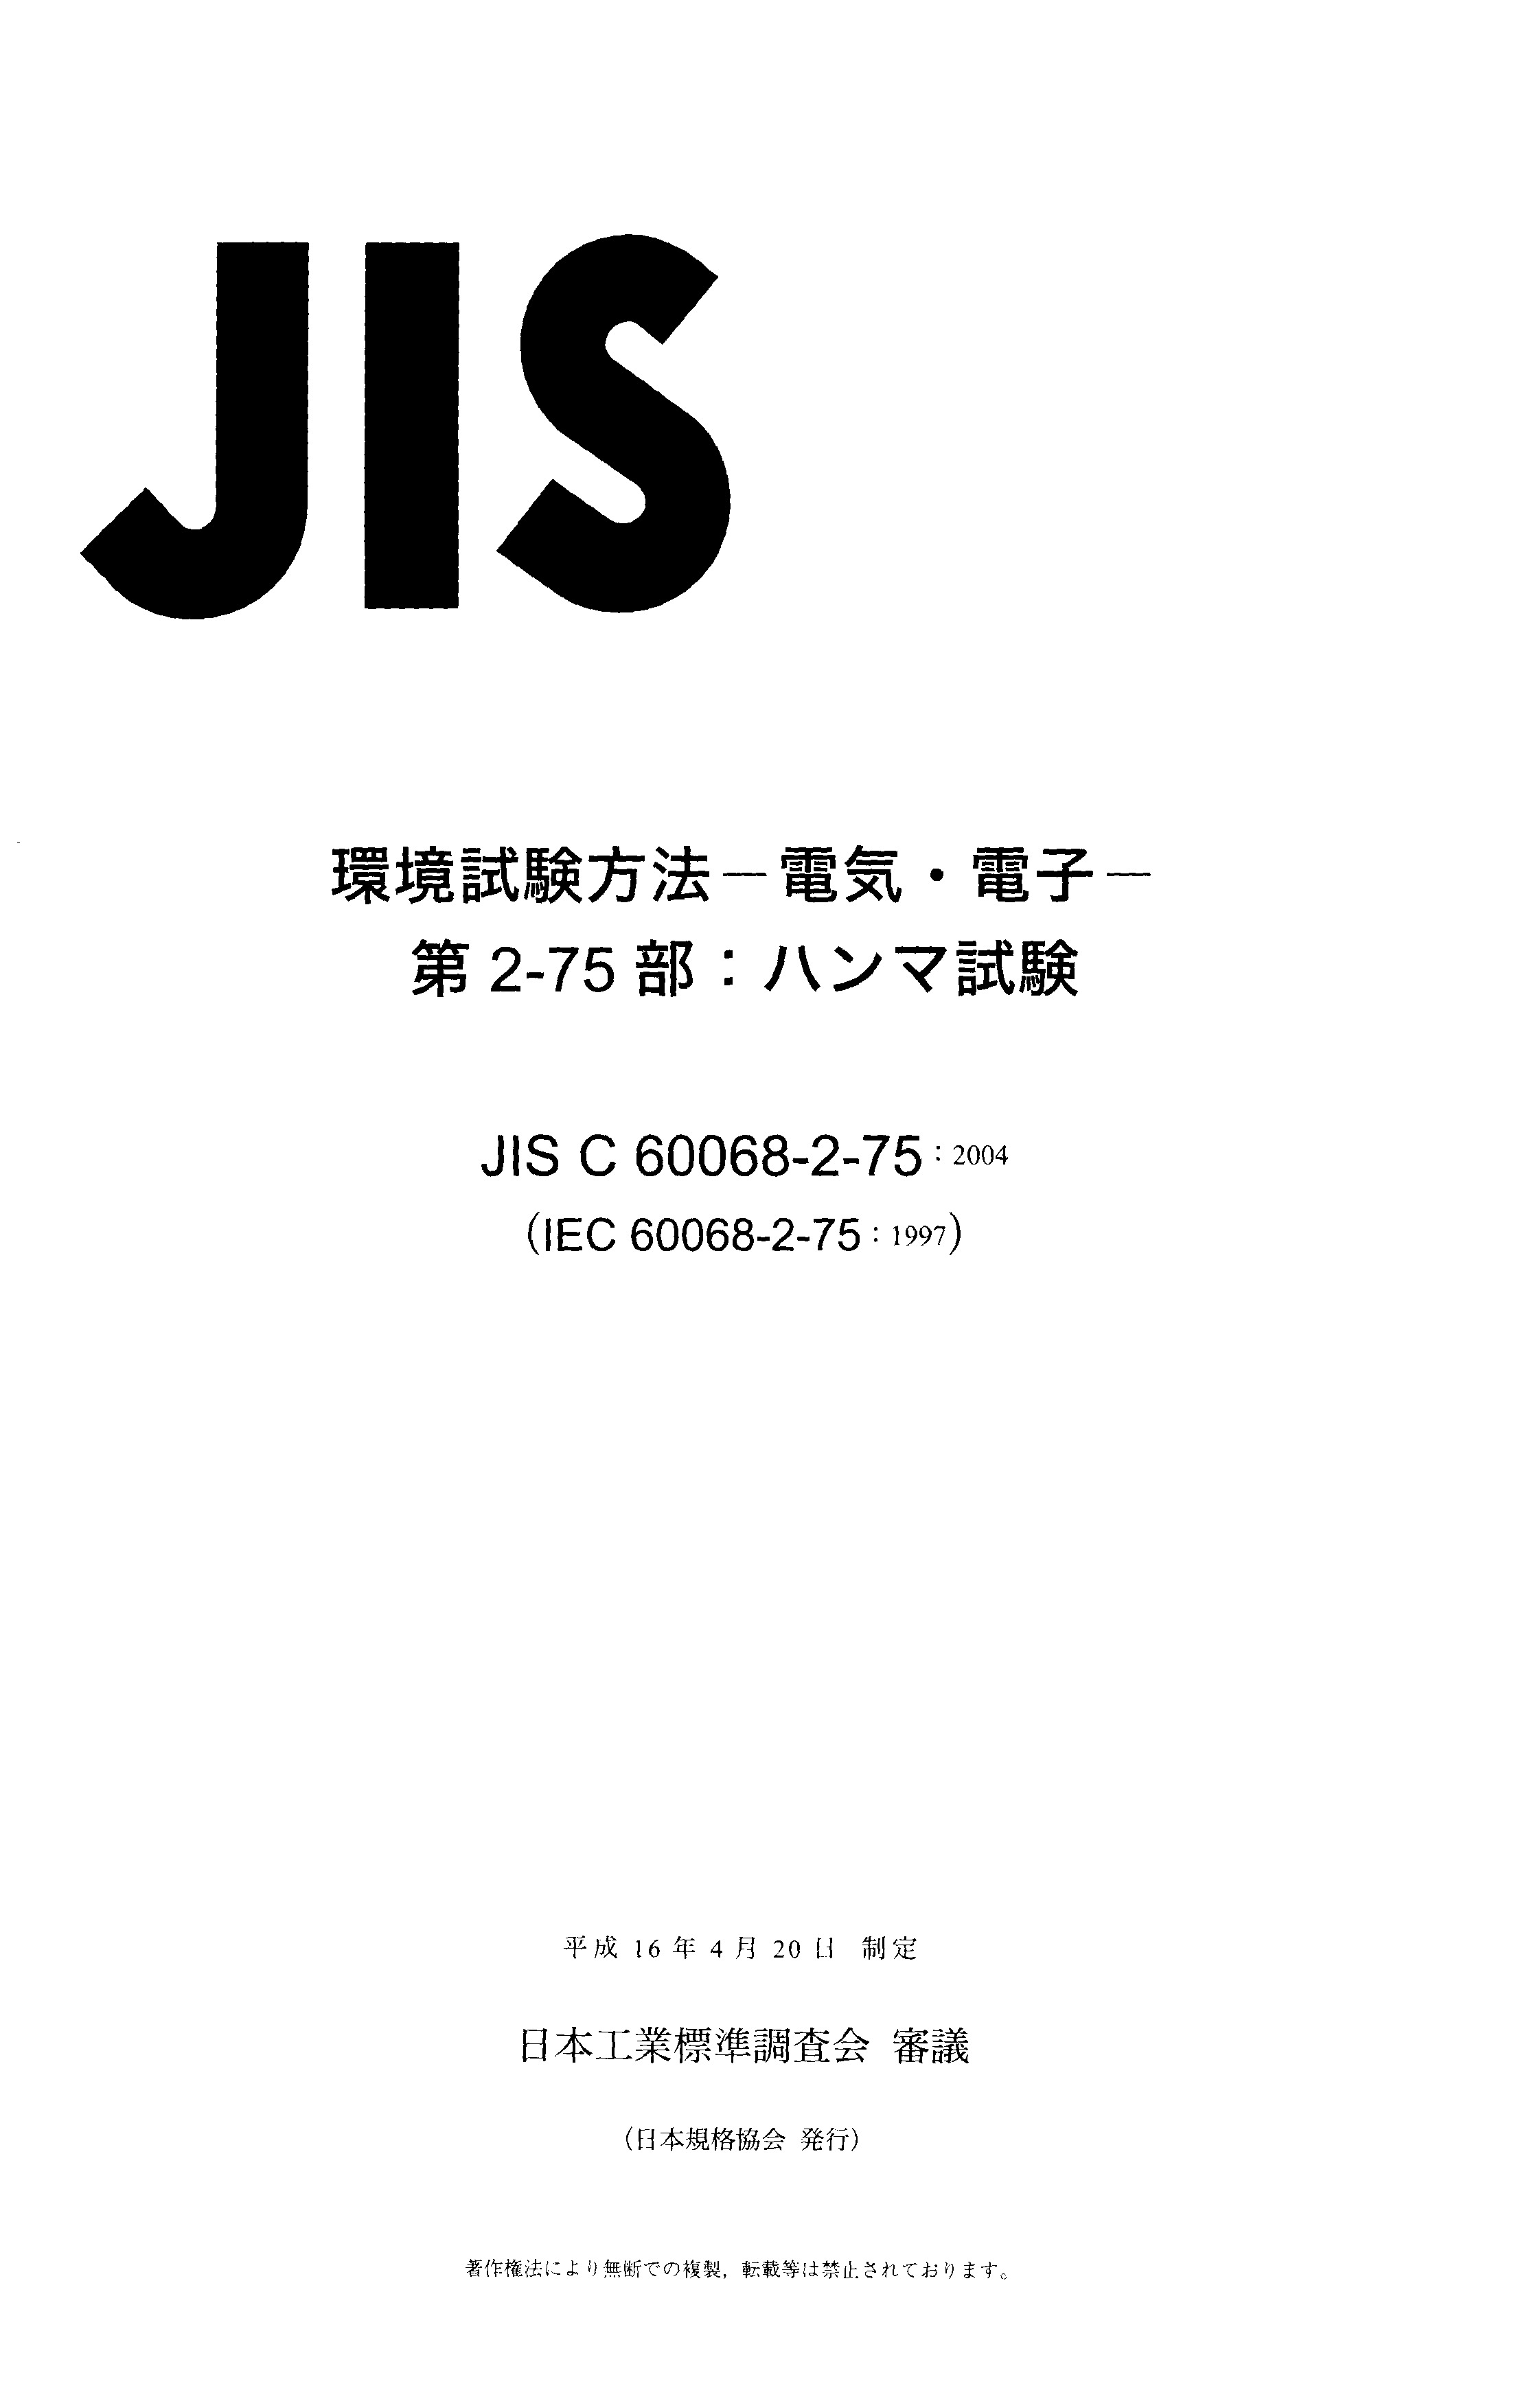 JIS C 60068-2-75:2004封面图